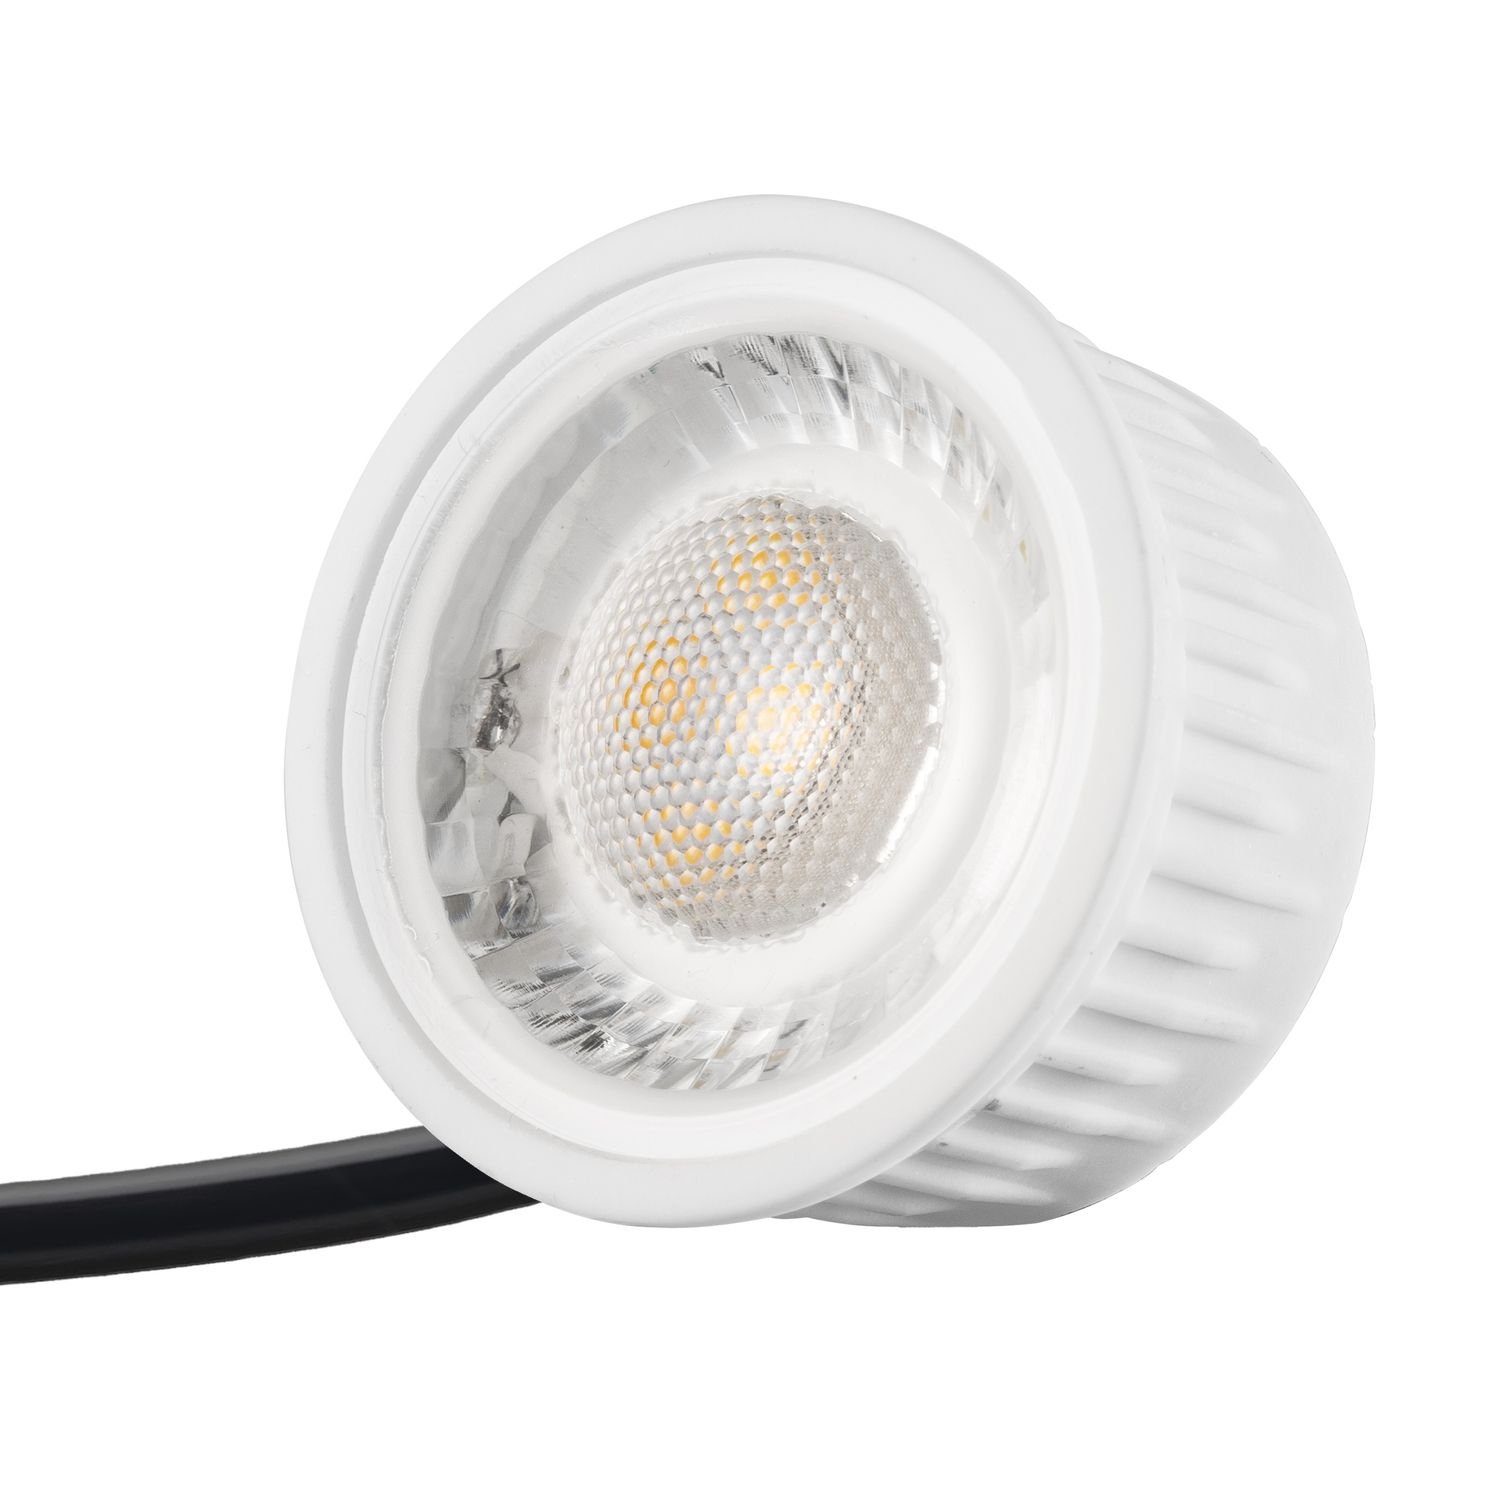 silber flach LED 10er / geb edelstahl in LEDANDO IP44 Set Einbaustrahler LED Einbaustrahler extra